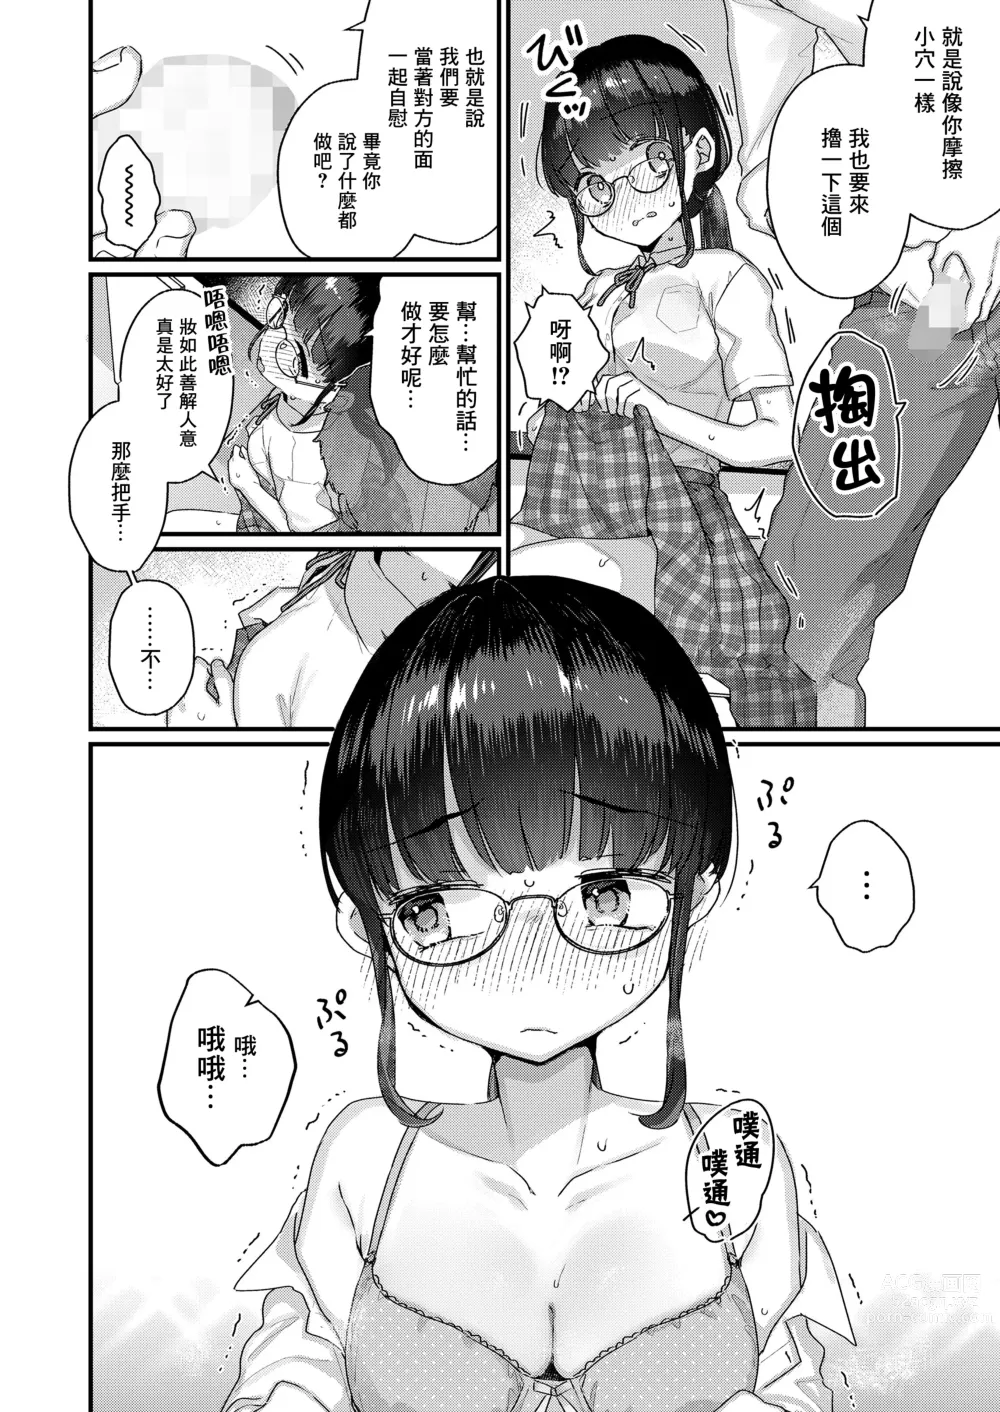 Page 7 of manga Konna no Shiritakunakatta